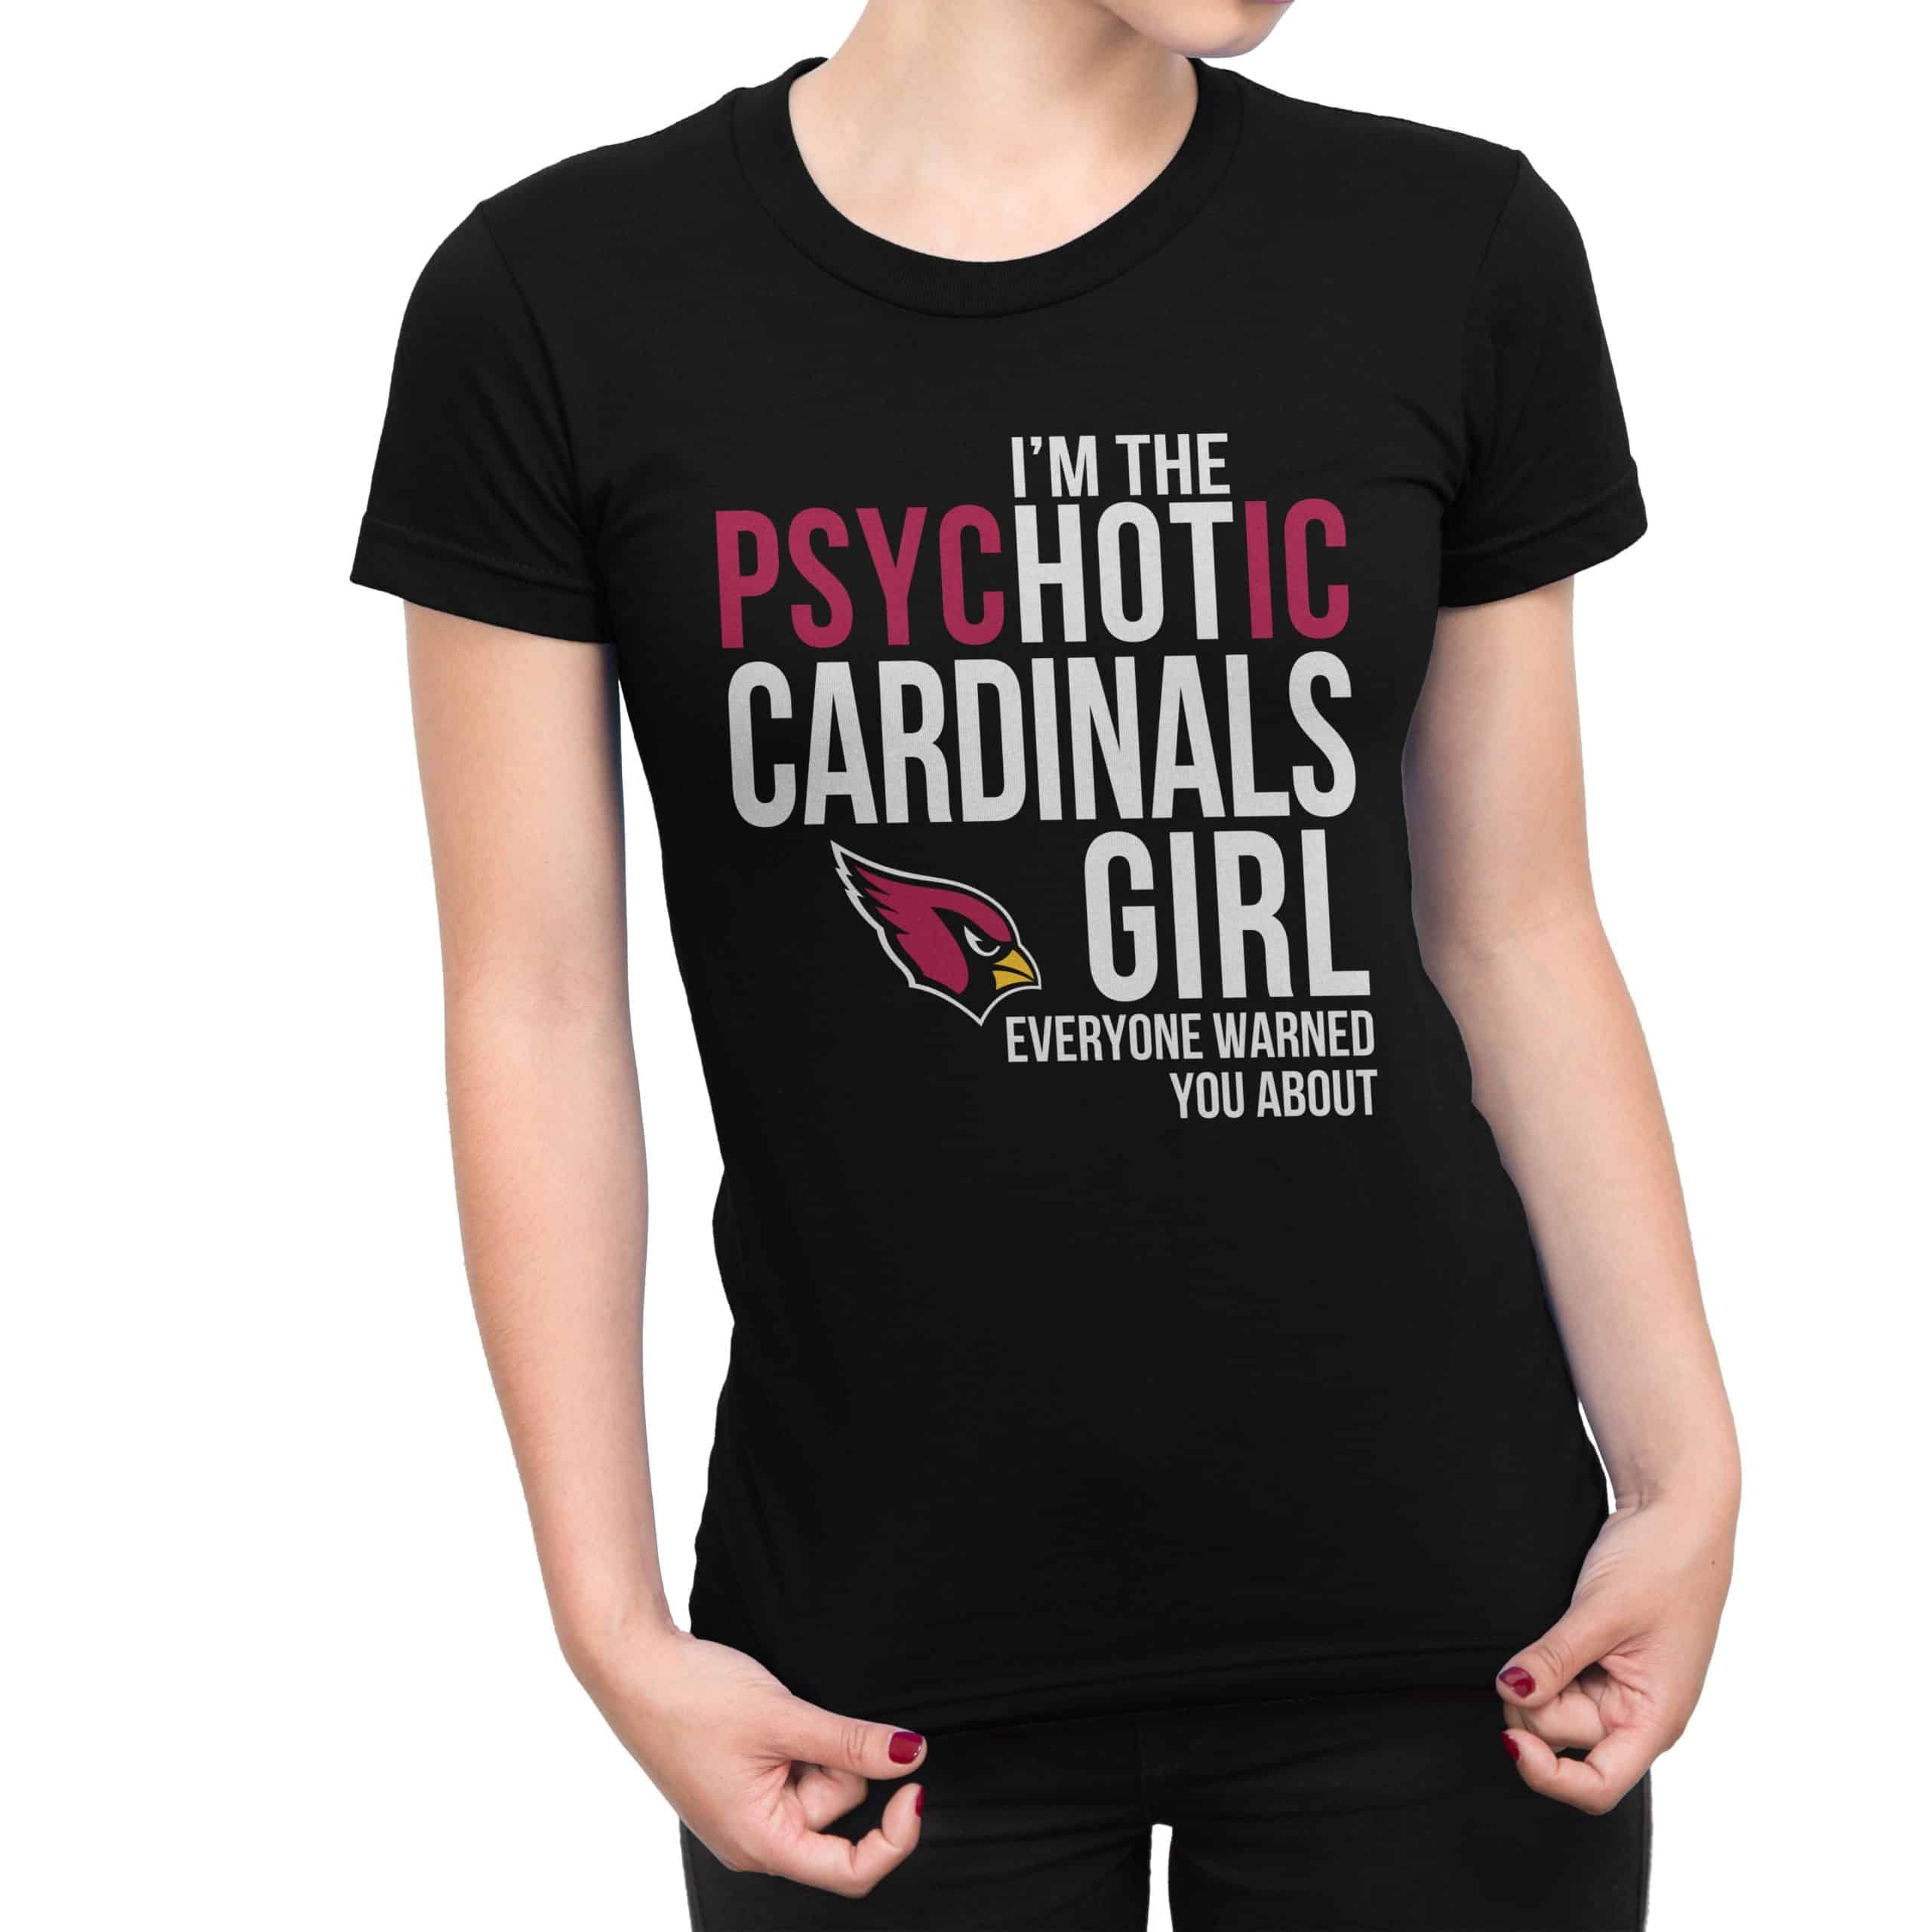 arizona cardinals football shirts